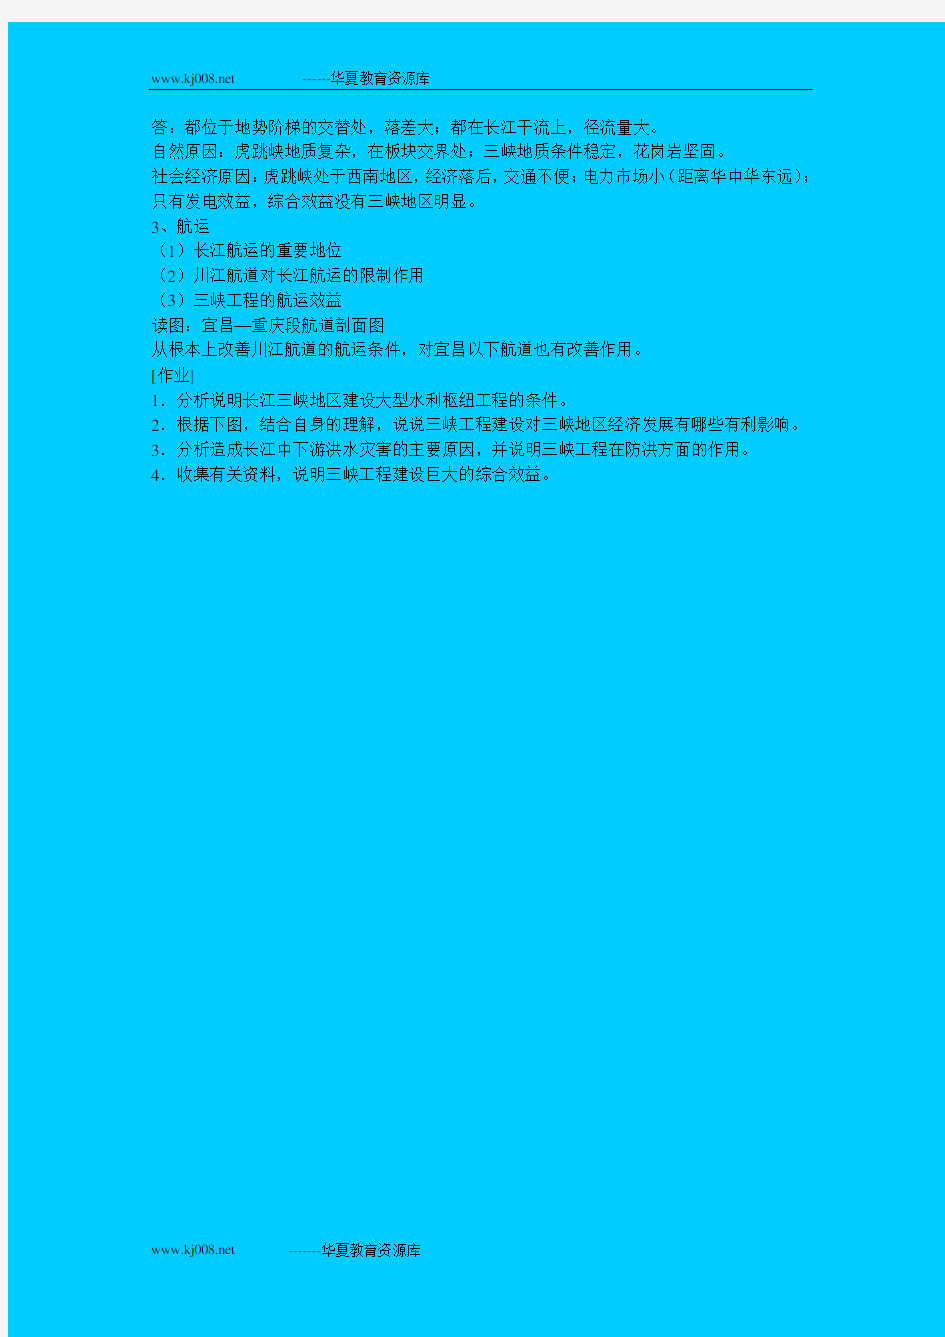 5 1长江三峡工程的意义和作用